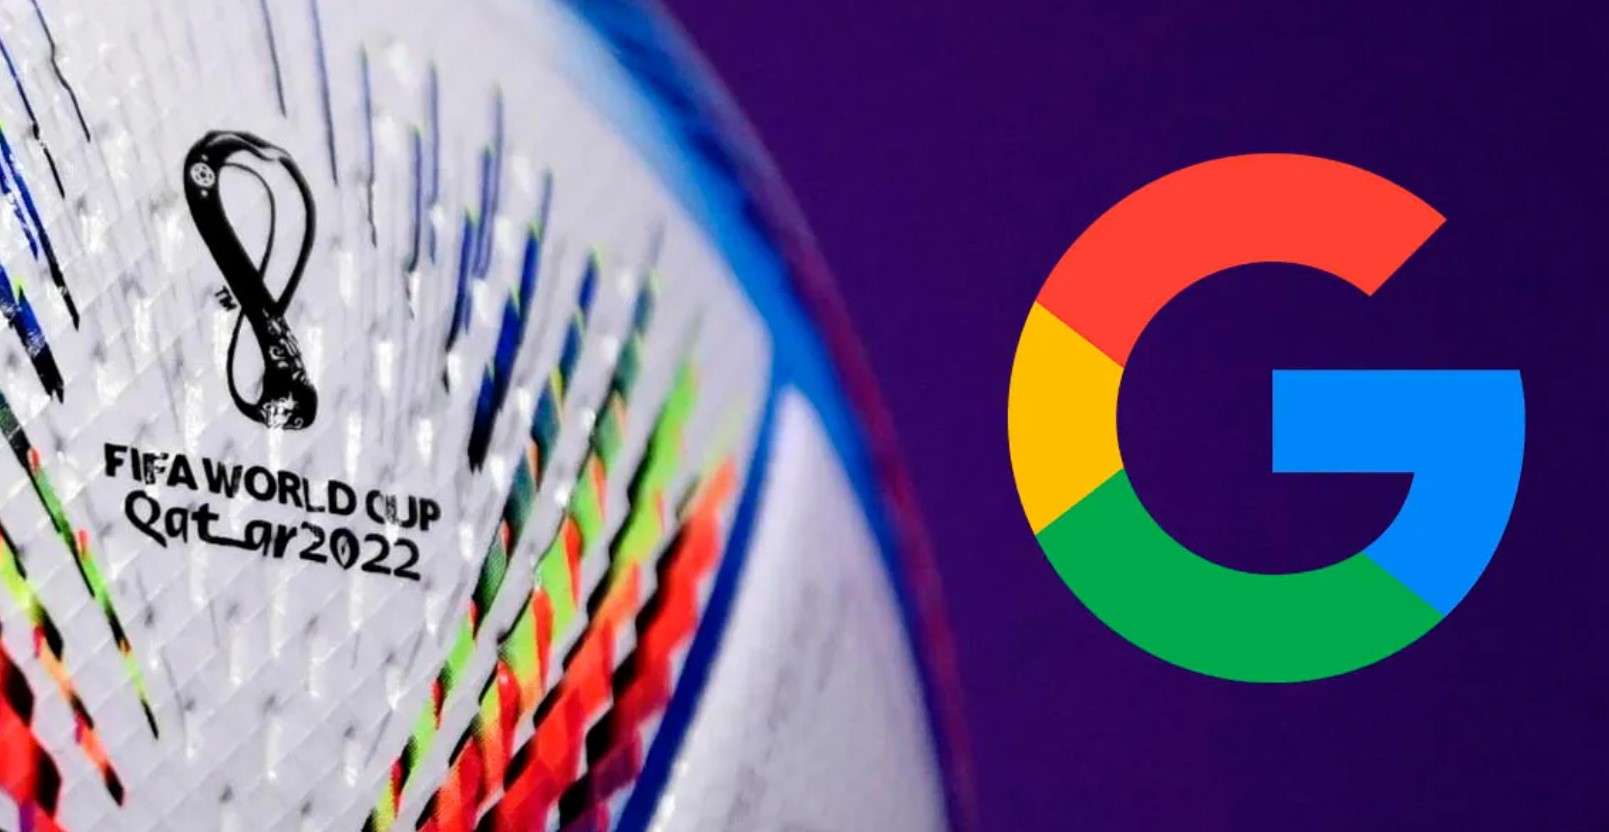 Recursos de Google para seguir el Mundial de Catar 2022